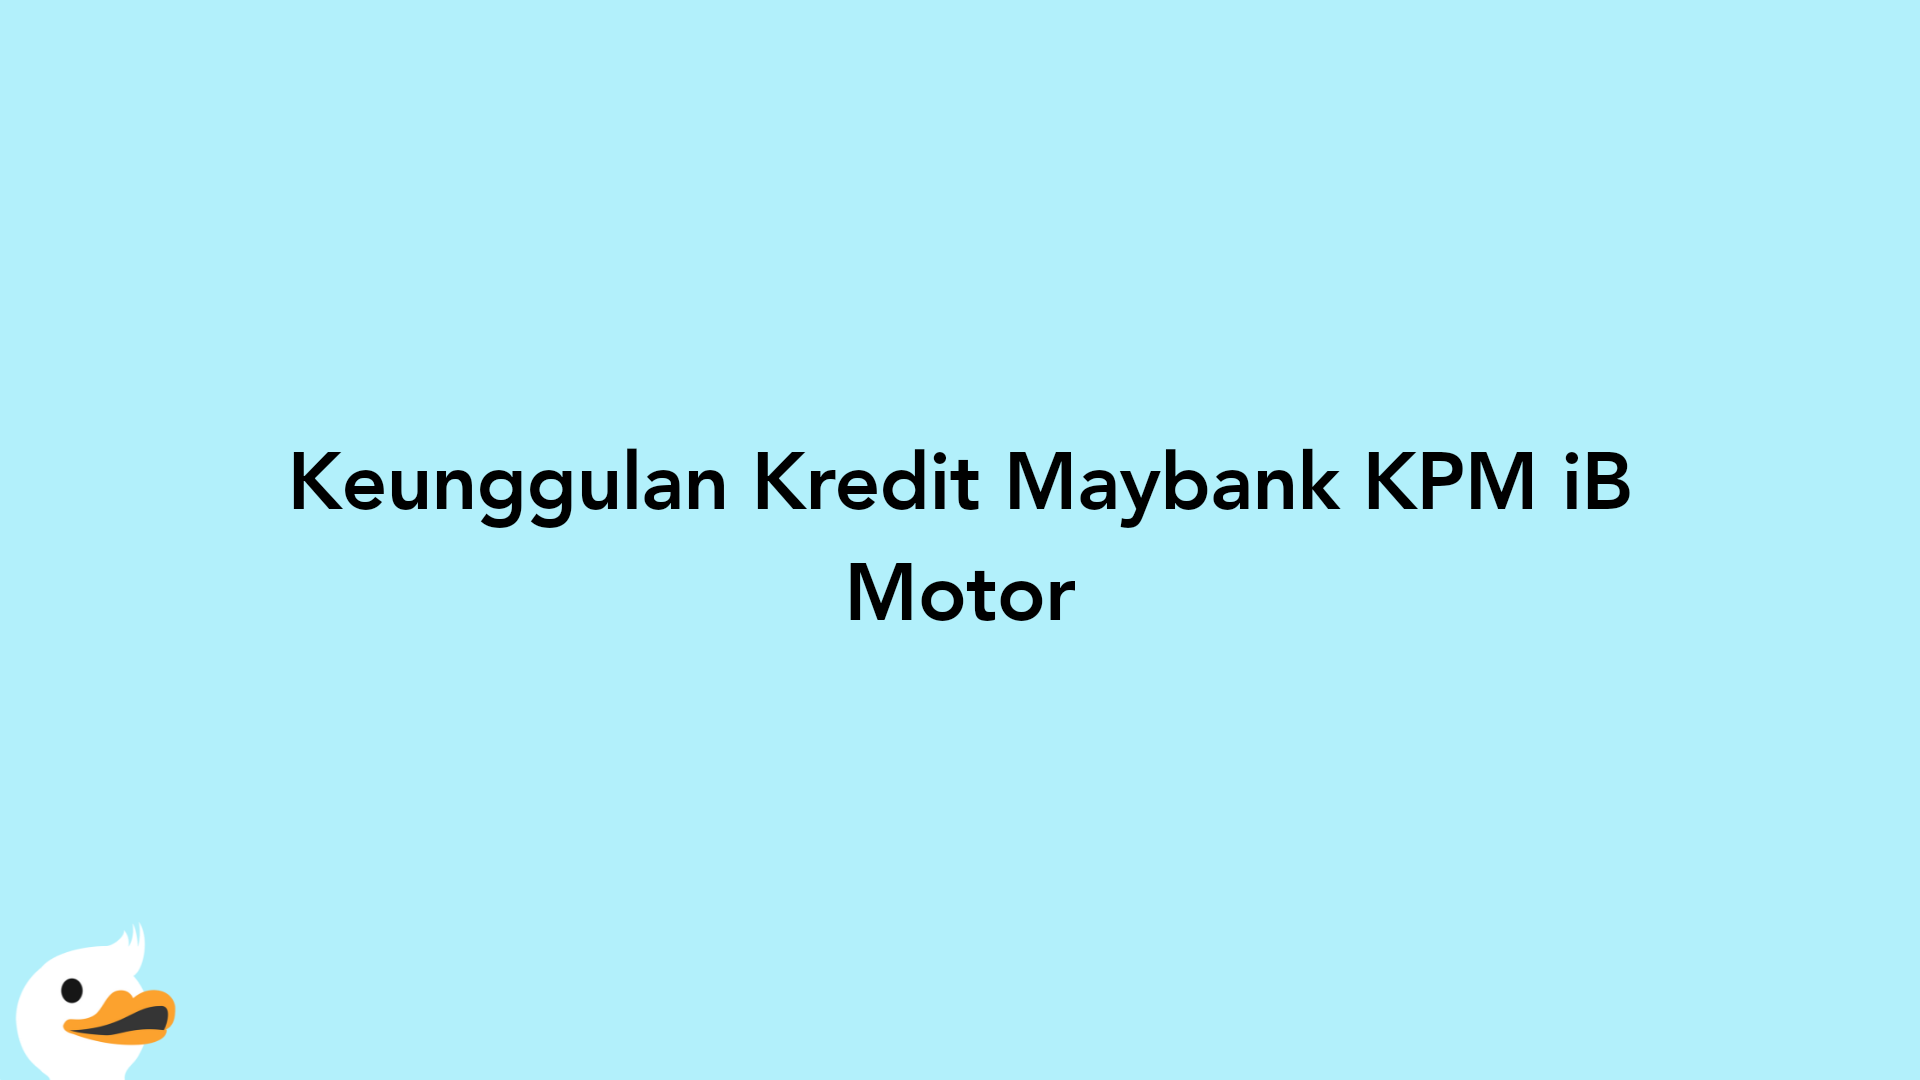 Keunggulan Kredit Maybank KPM iB Motor